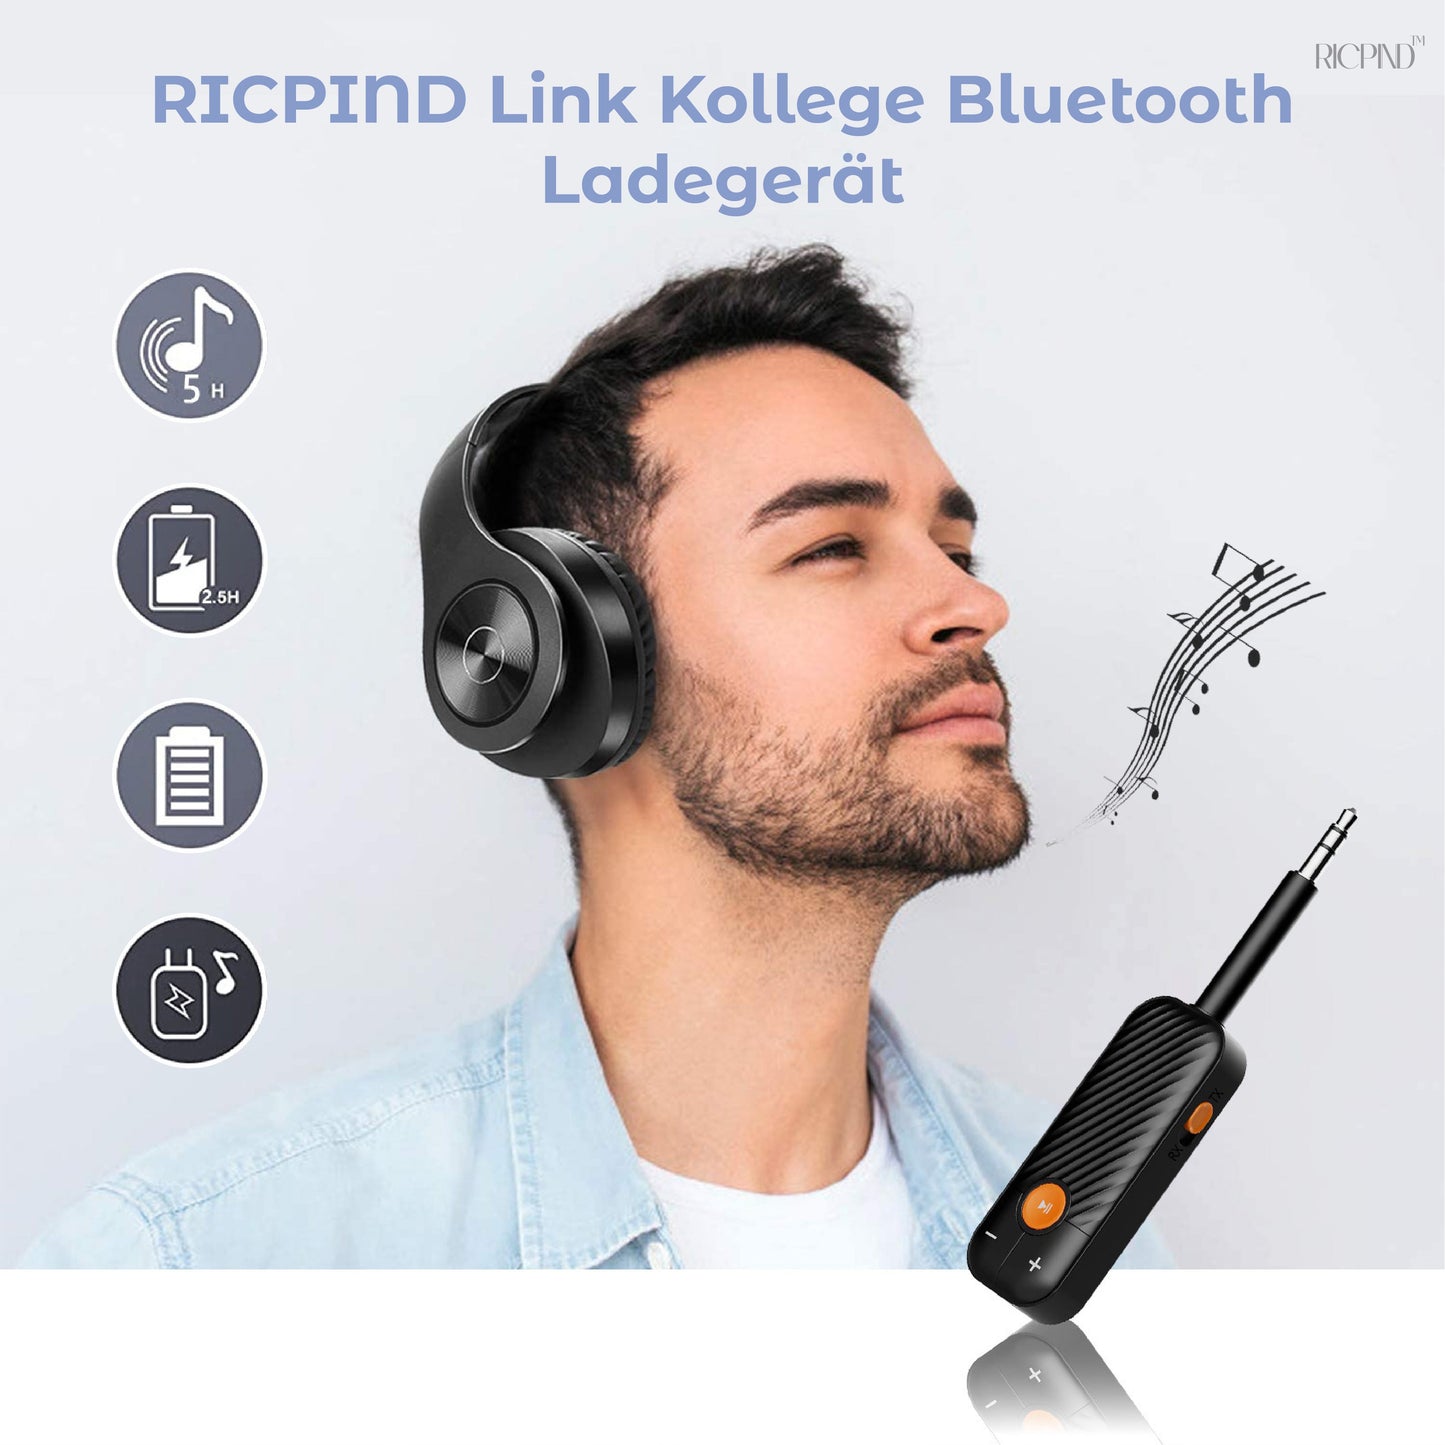 RICPIND Link Kollege Bluetooth Ladegerät